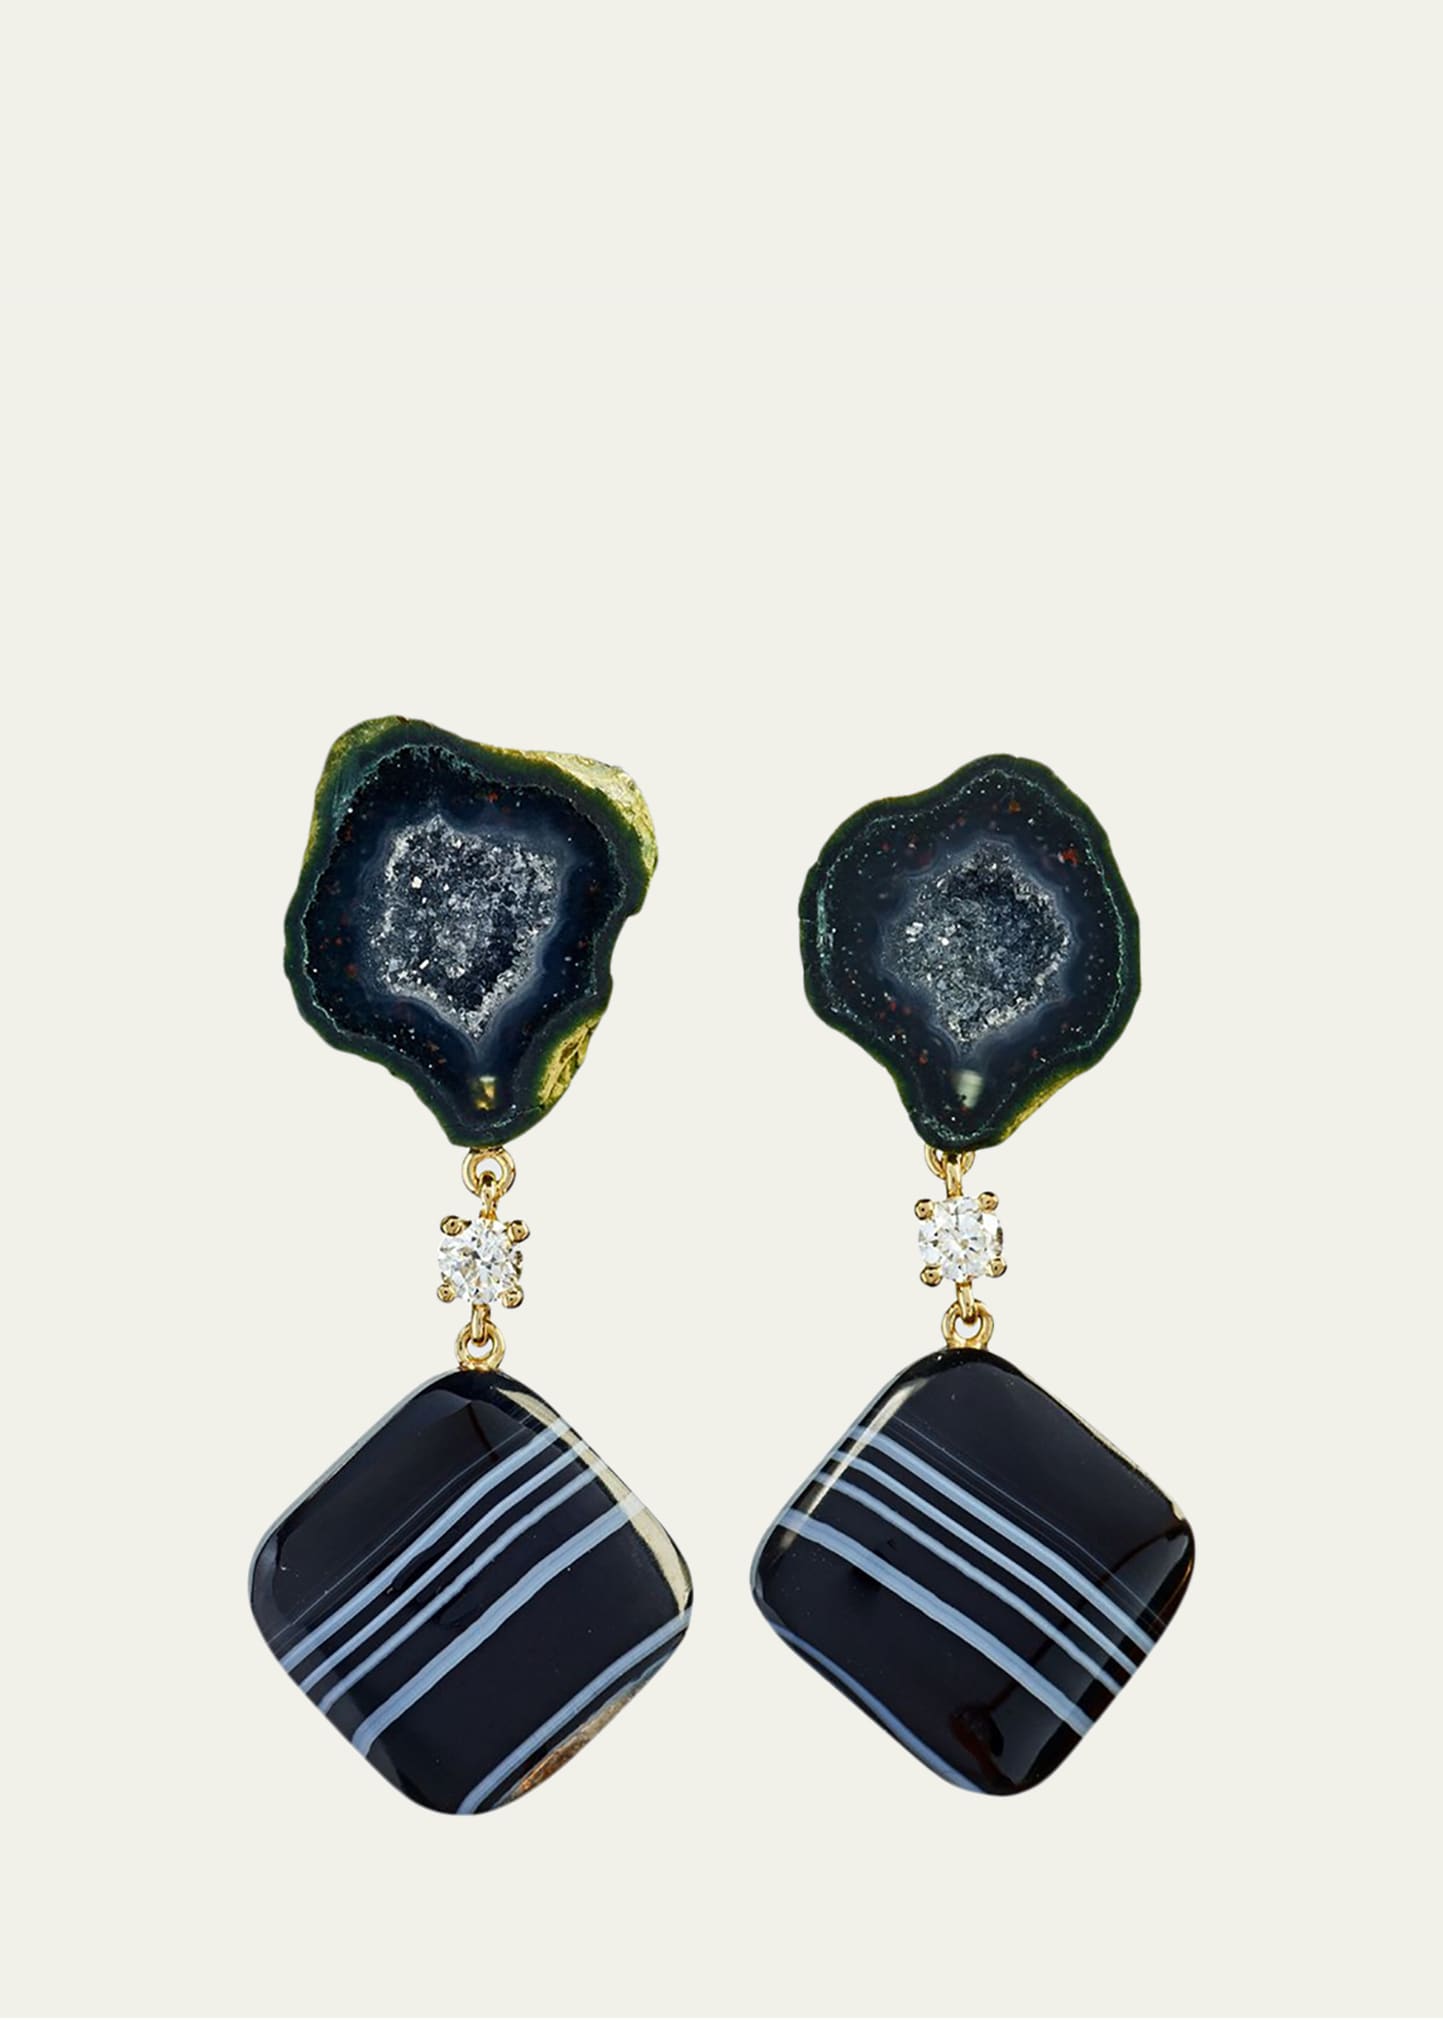 Jan Leslie 18k Bespoke 2-Tier One-of-a-Kind Luxury Earrings w/ Black Tabasco Geode w/ Agate Druzy, Tuxedo Agate & Diamonds